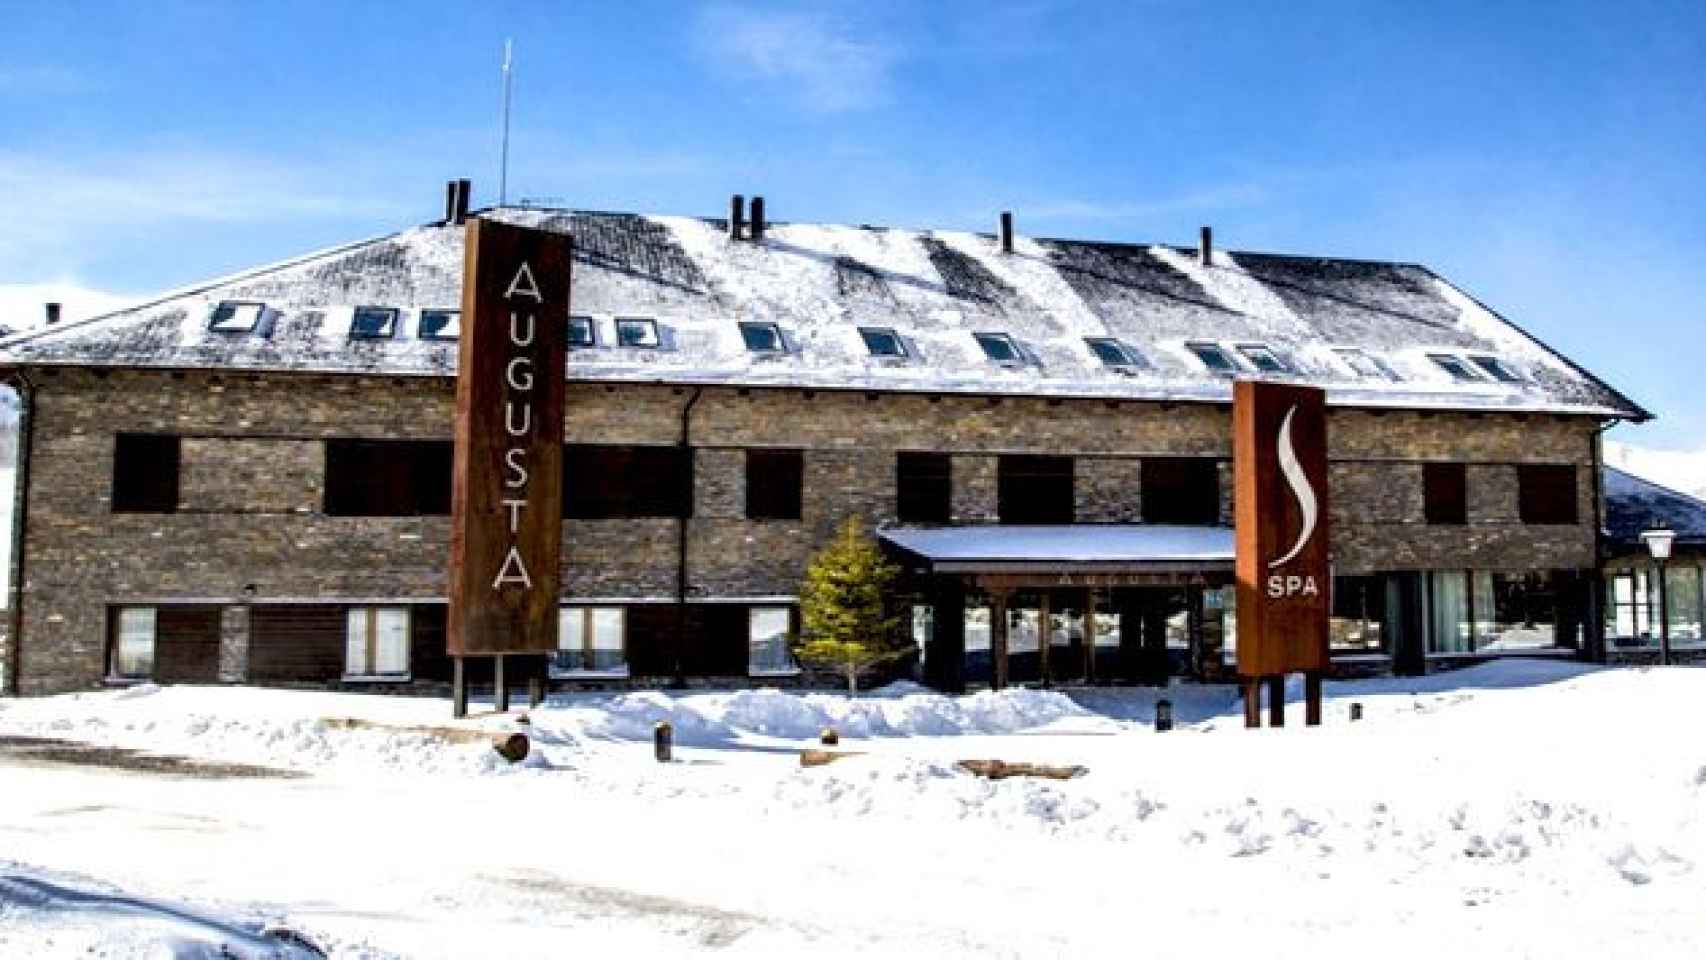 Apartahotel Augusta, el establecimiento ubicado en la estación de esquí de Boí Taüll que Banco Sabadell ha vendido a Kesse Invest / CG